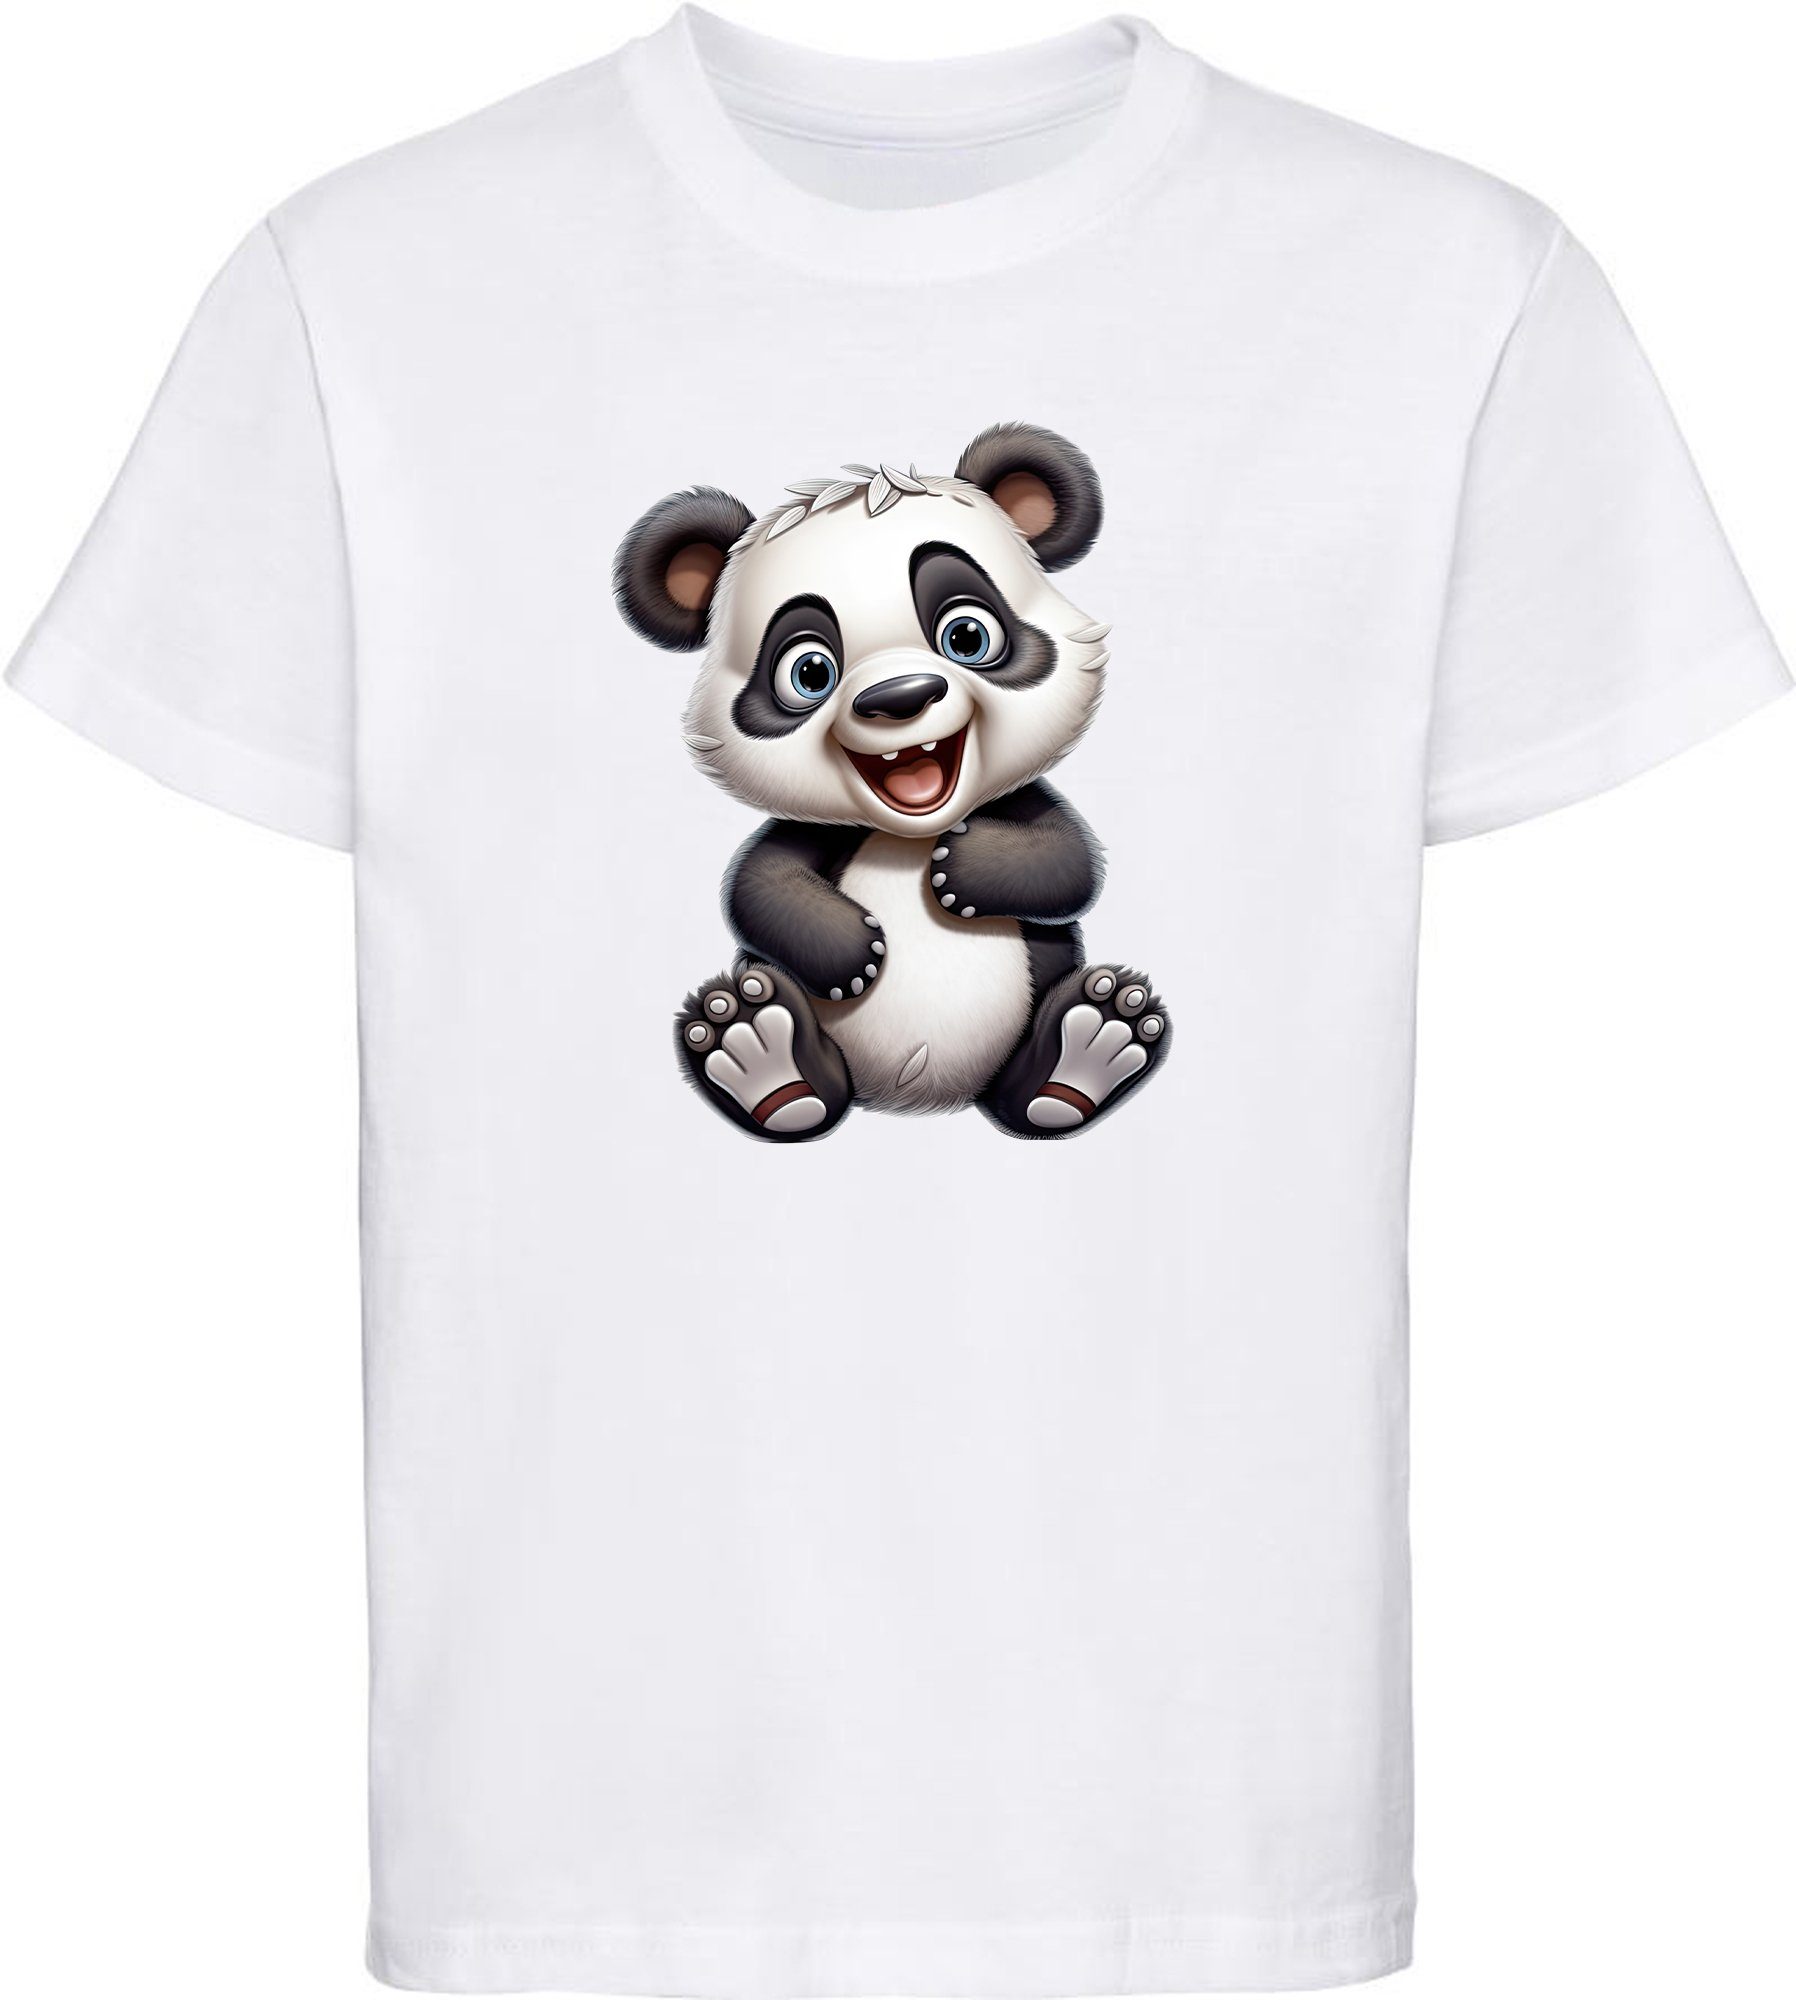 Panda Aufdruck, Wildtier Print - mit Kinder MyDesign24 Baby i277 weiss Bär Shirt T-Shirt Baumwollshirt bedruckt